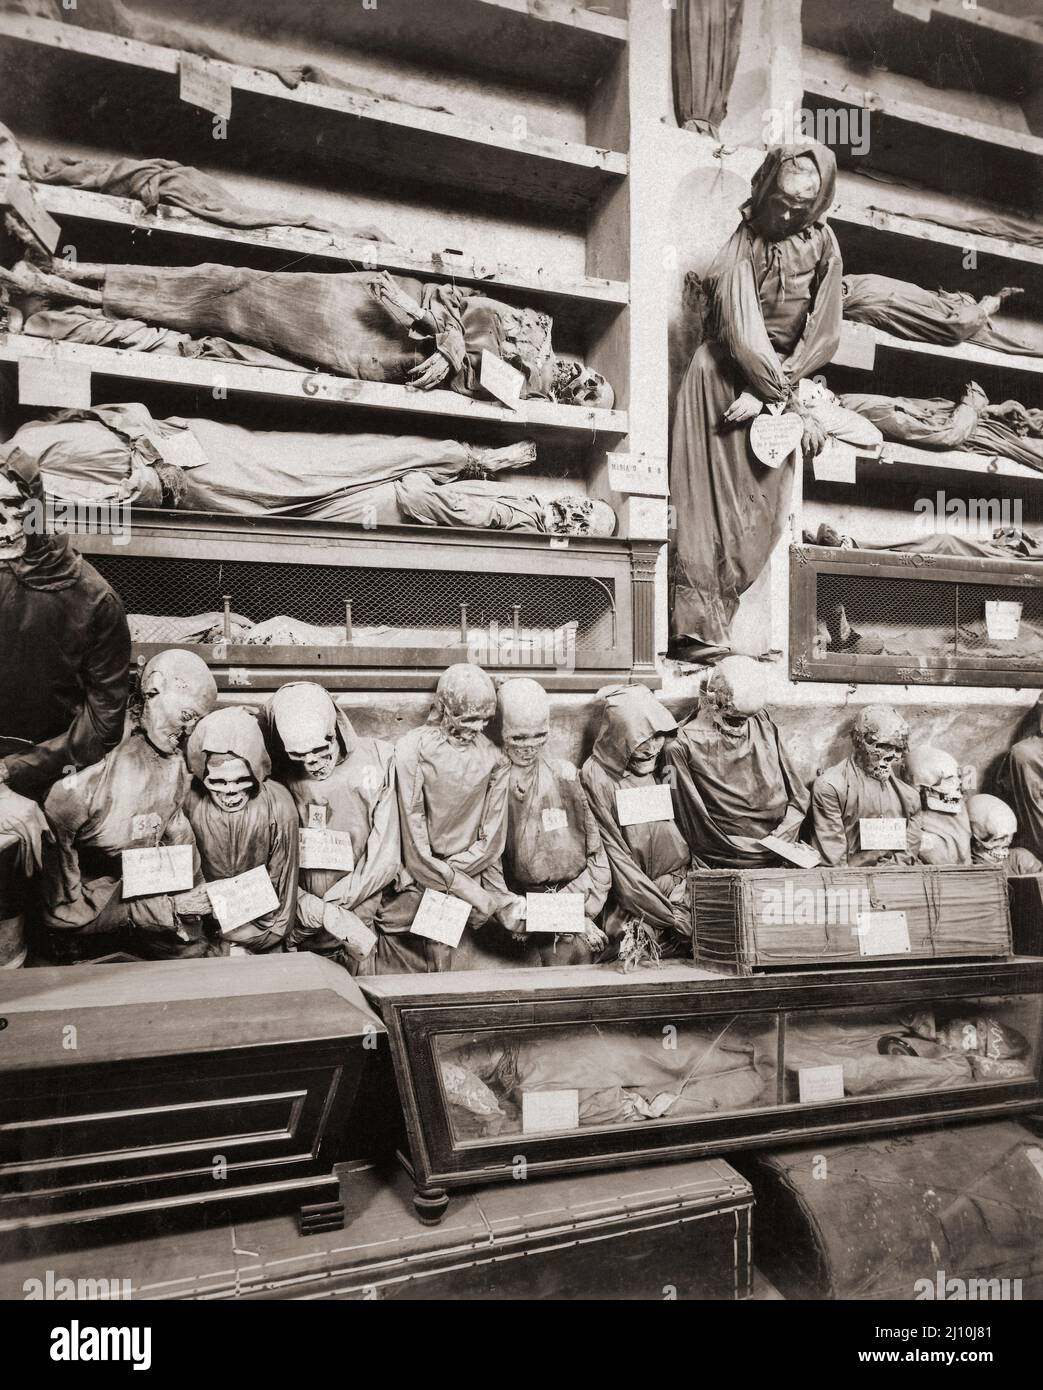 Mumifizierte Leichen von verstorbenen Mönchen in den Kapuzinerkatakomben von Palermo, Sizilien, Italien. Nach einer Arbeit des italienischen Fotografen Giuseppe Incorpora um 1895. Stockfoto